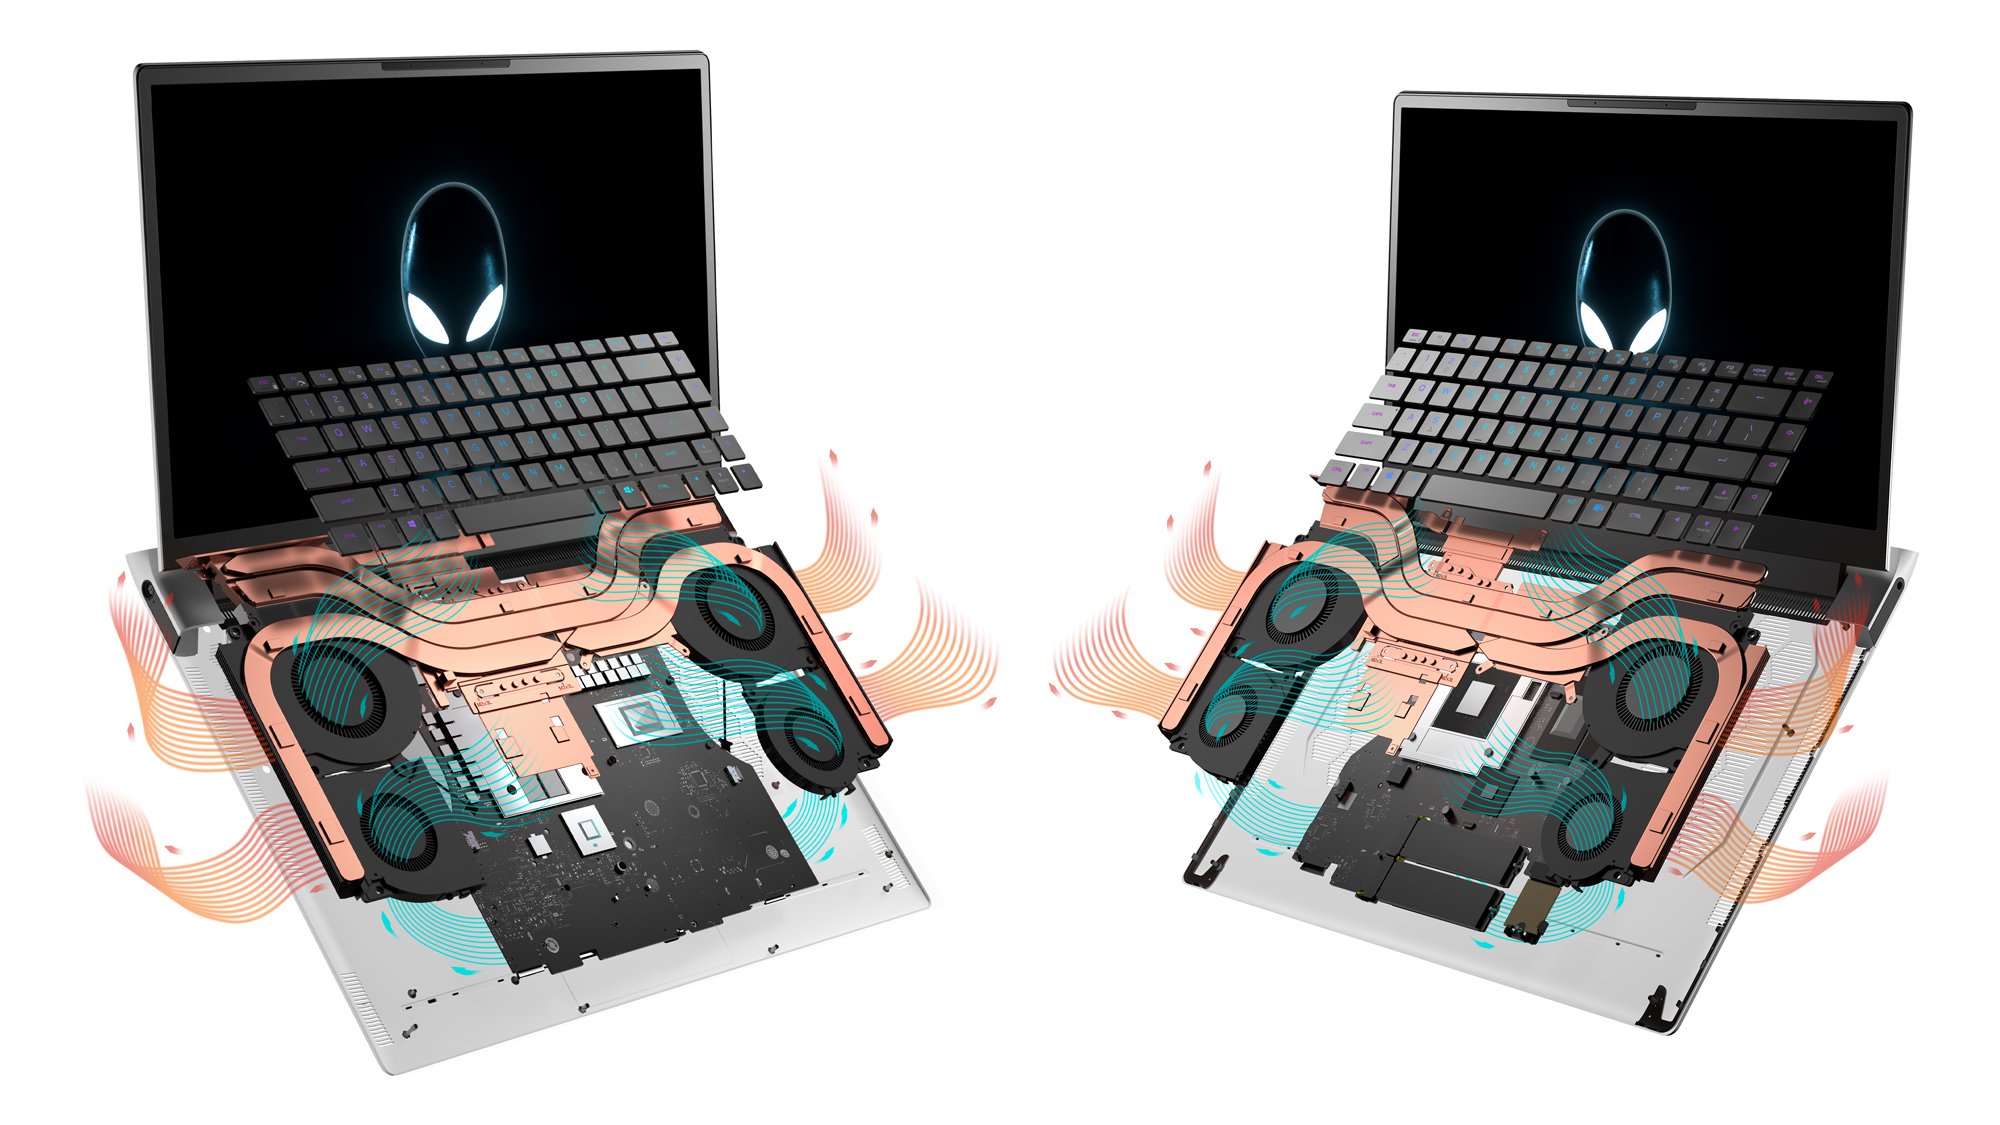 Links das Alienware x17, rechts das x15.